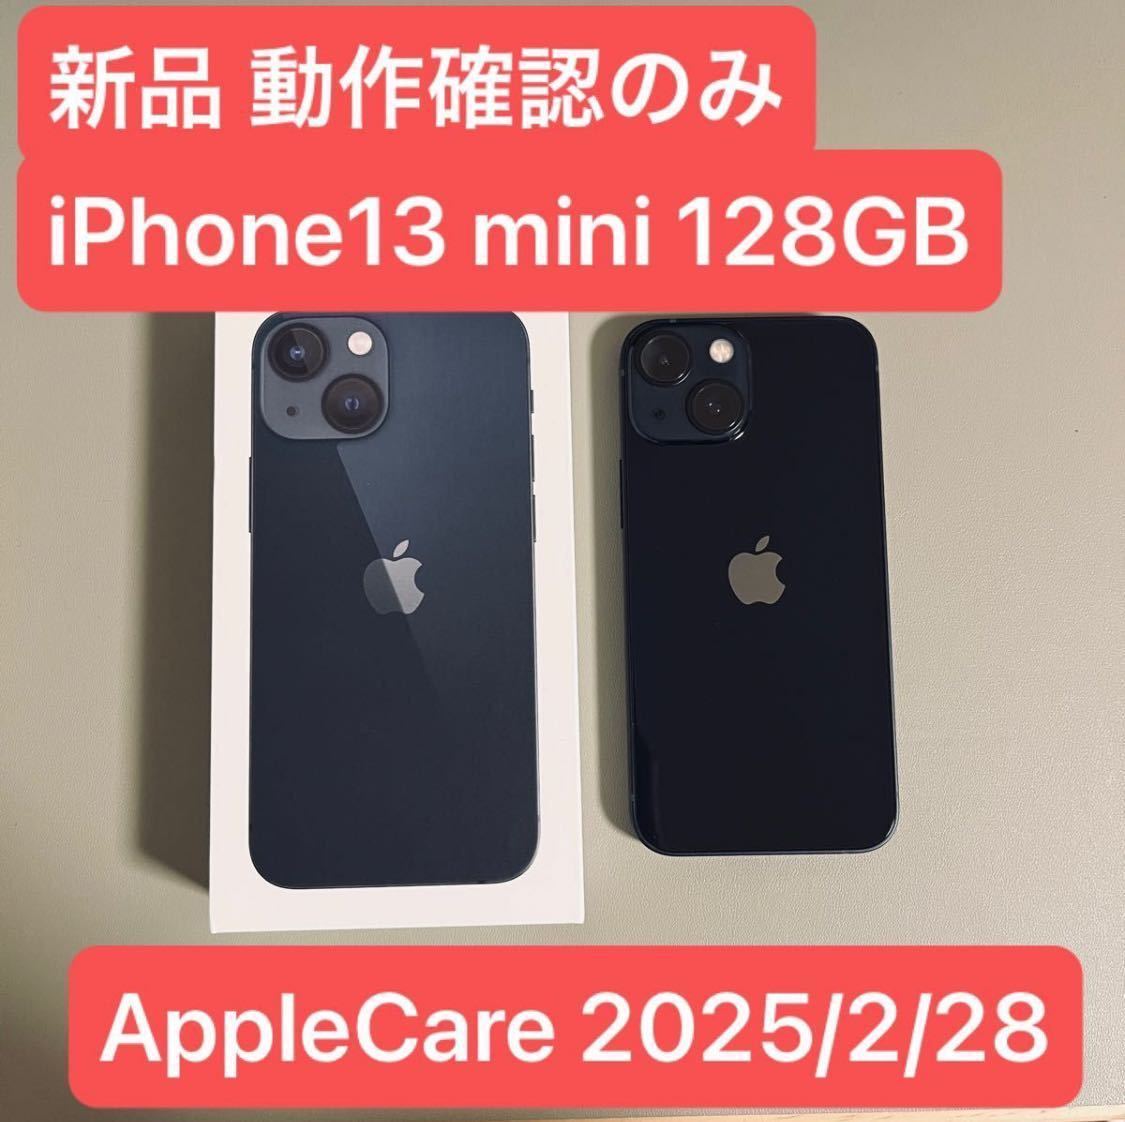 即発送・新品 AppleCare付 iPhone13 mini 128GBミッドナイト SIMフリー